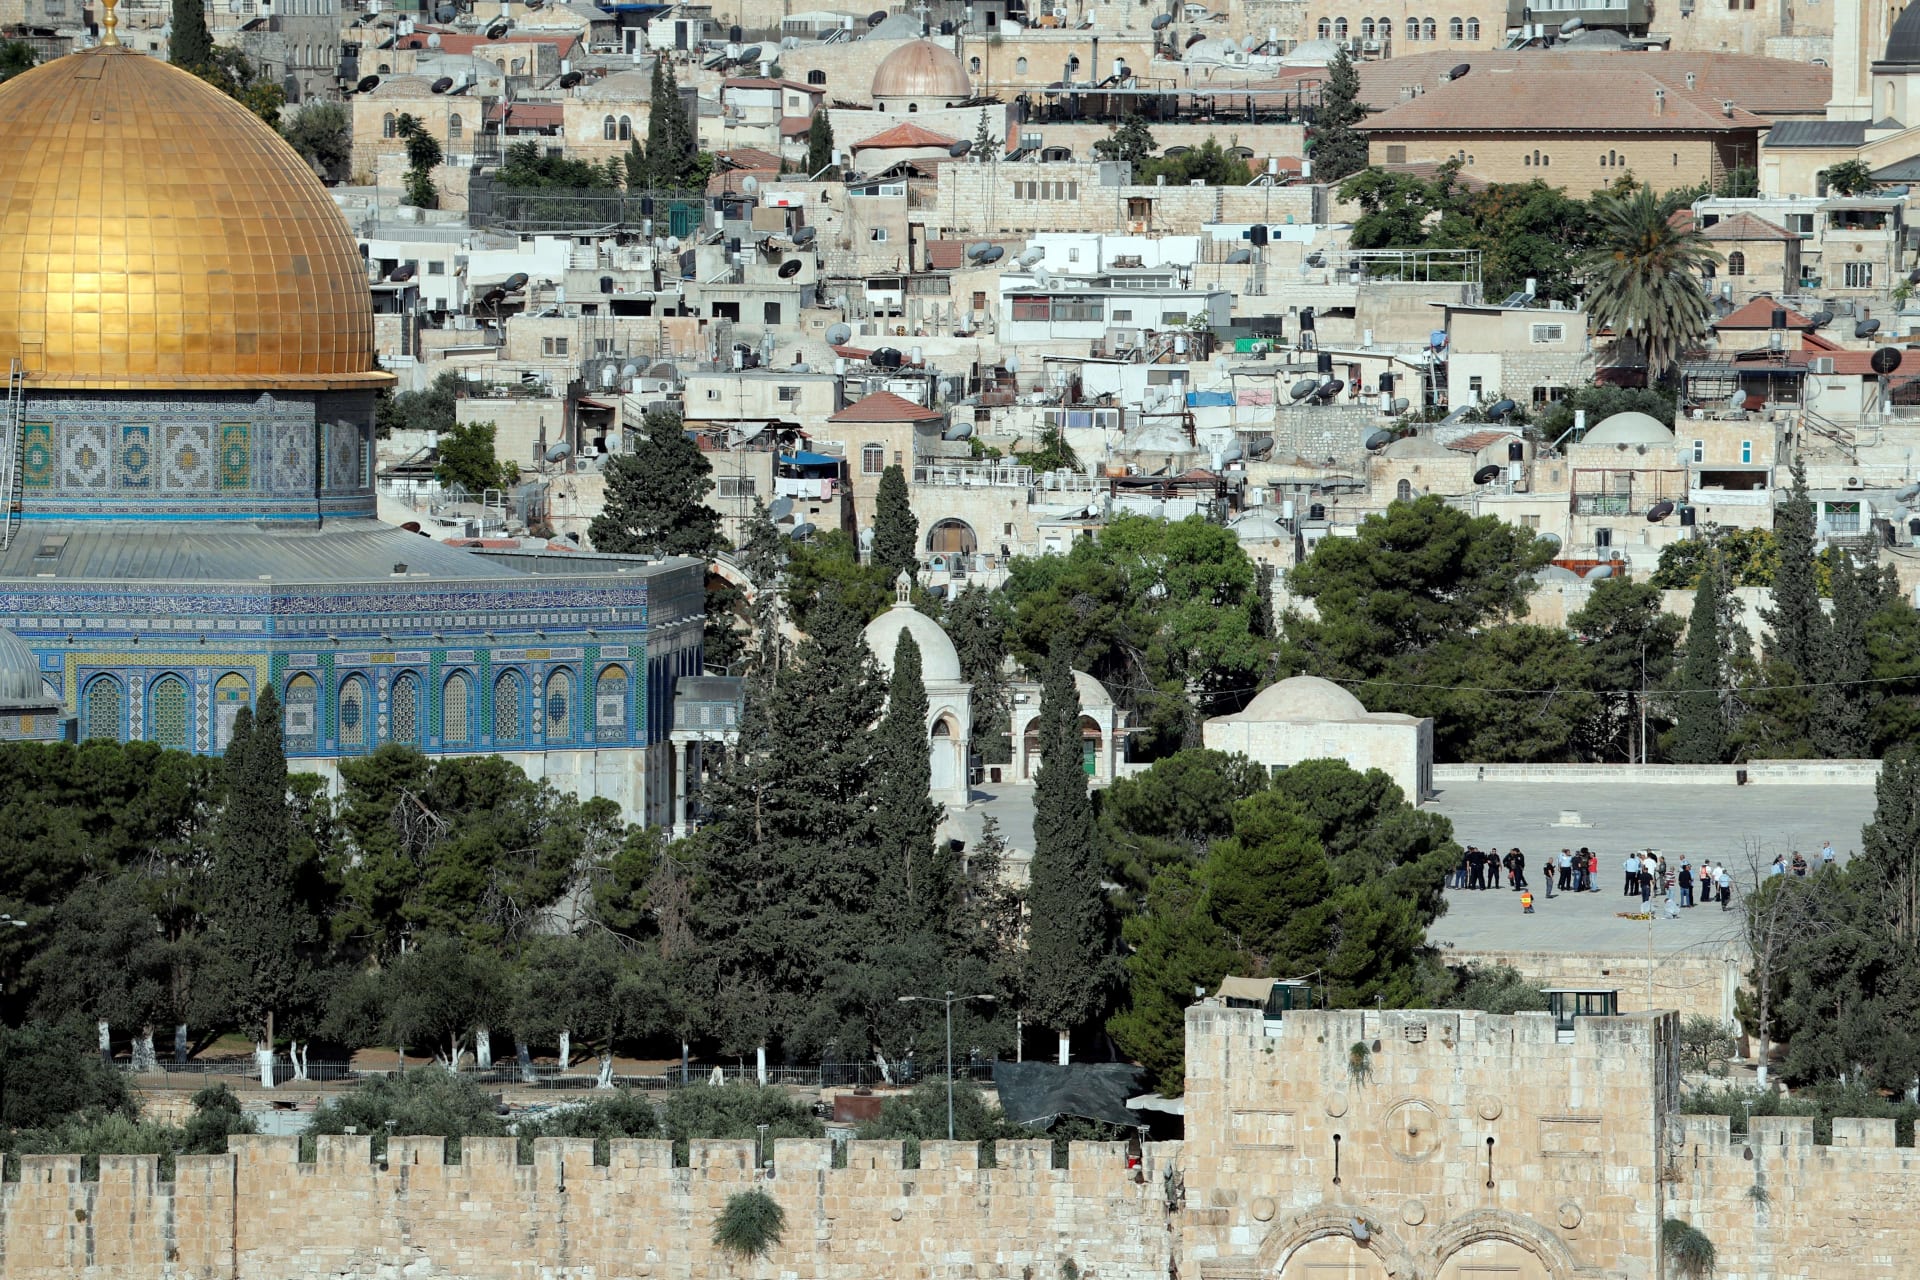 الأردن يحذر إسرائيل من التذرع بـ"احتواء العنف" لـ"انتهاك حرمة المسجد الأقصى"